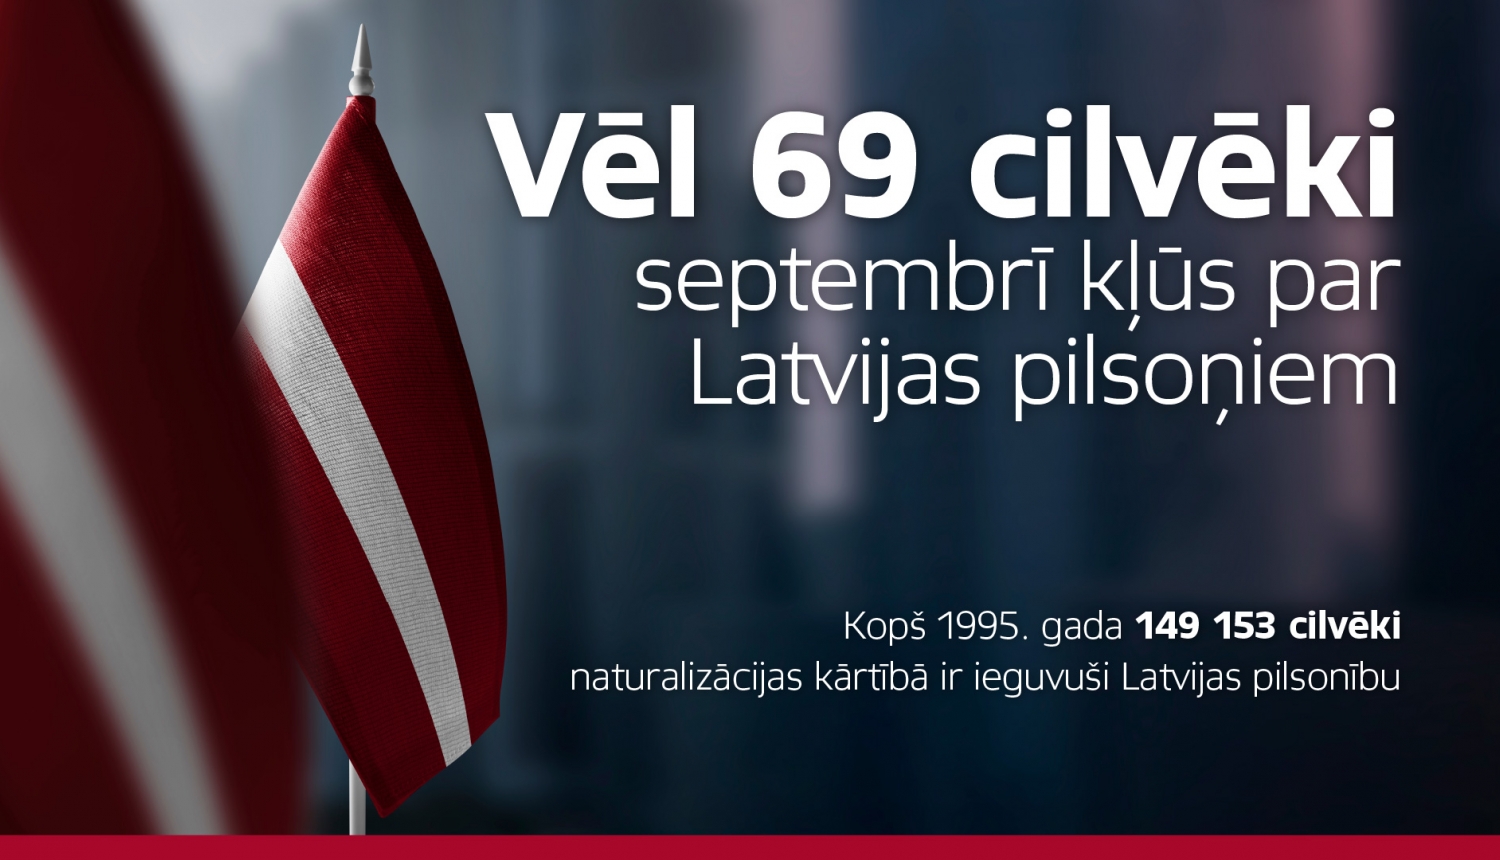 69 cilvēki septembrī kļūs par Latvijas pilsoņiem